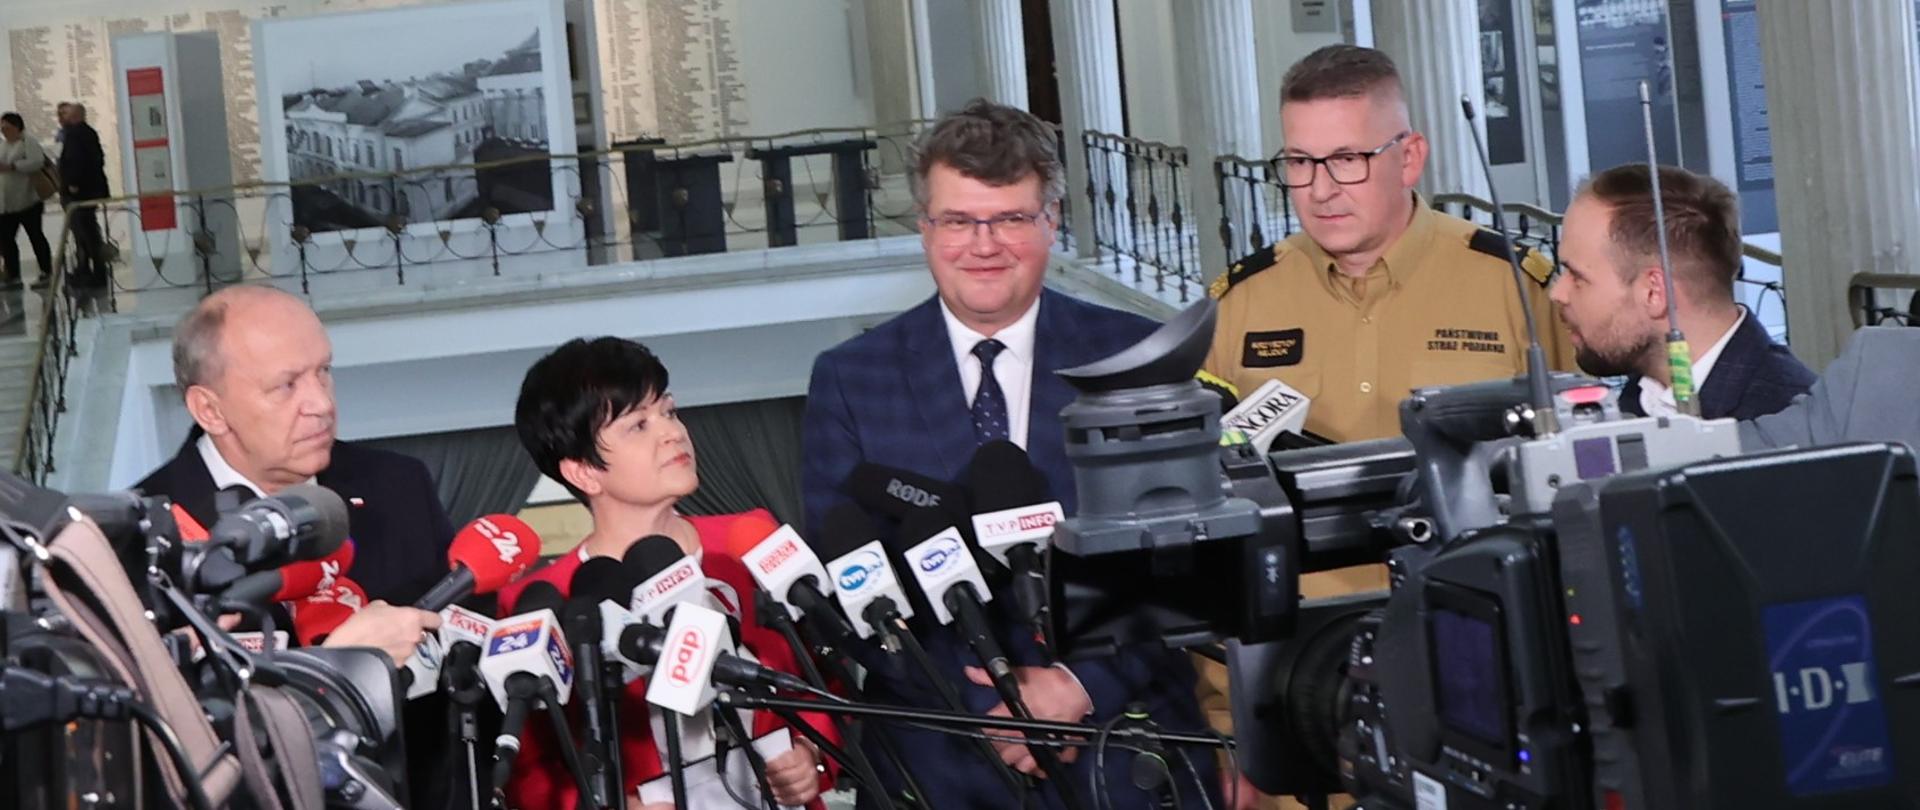 Na zdjęciu widać pięć osób podczas briefingu prasowego w gmachu Sejmu RP